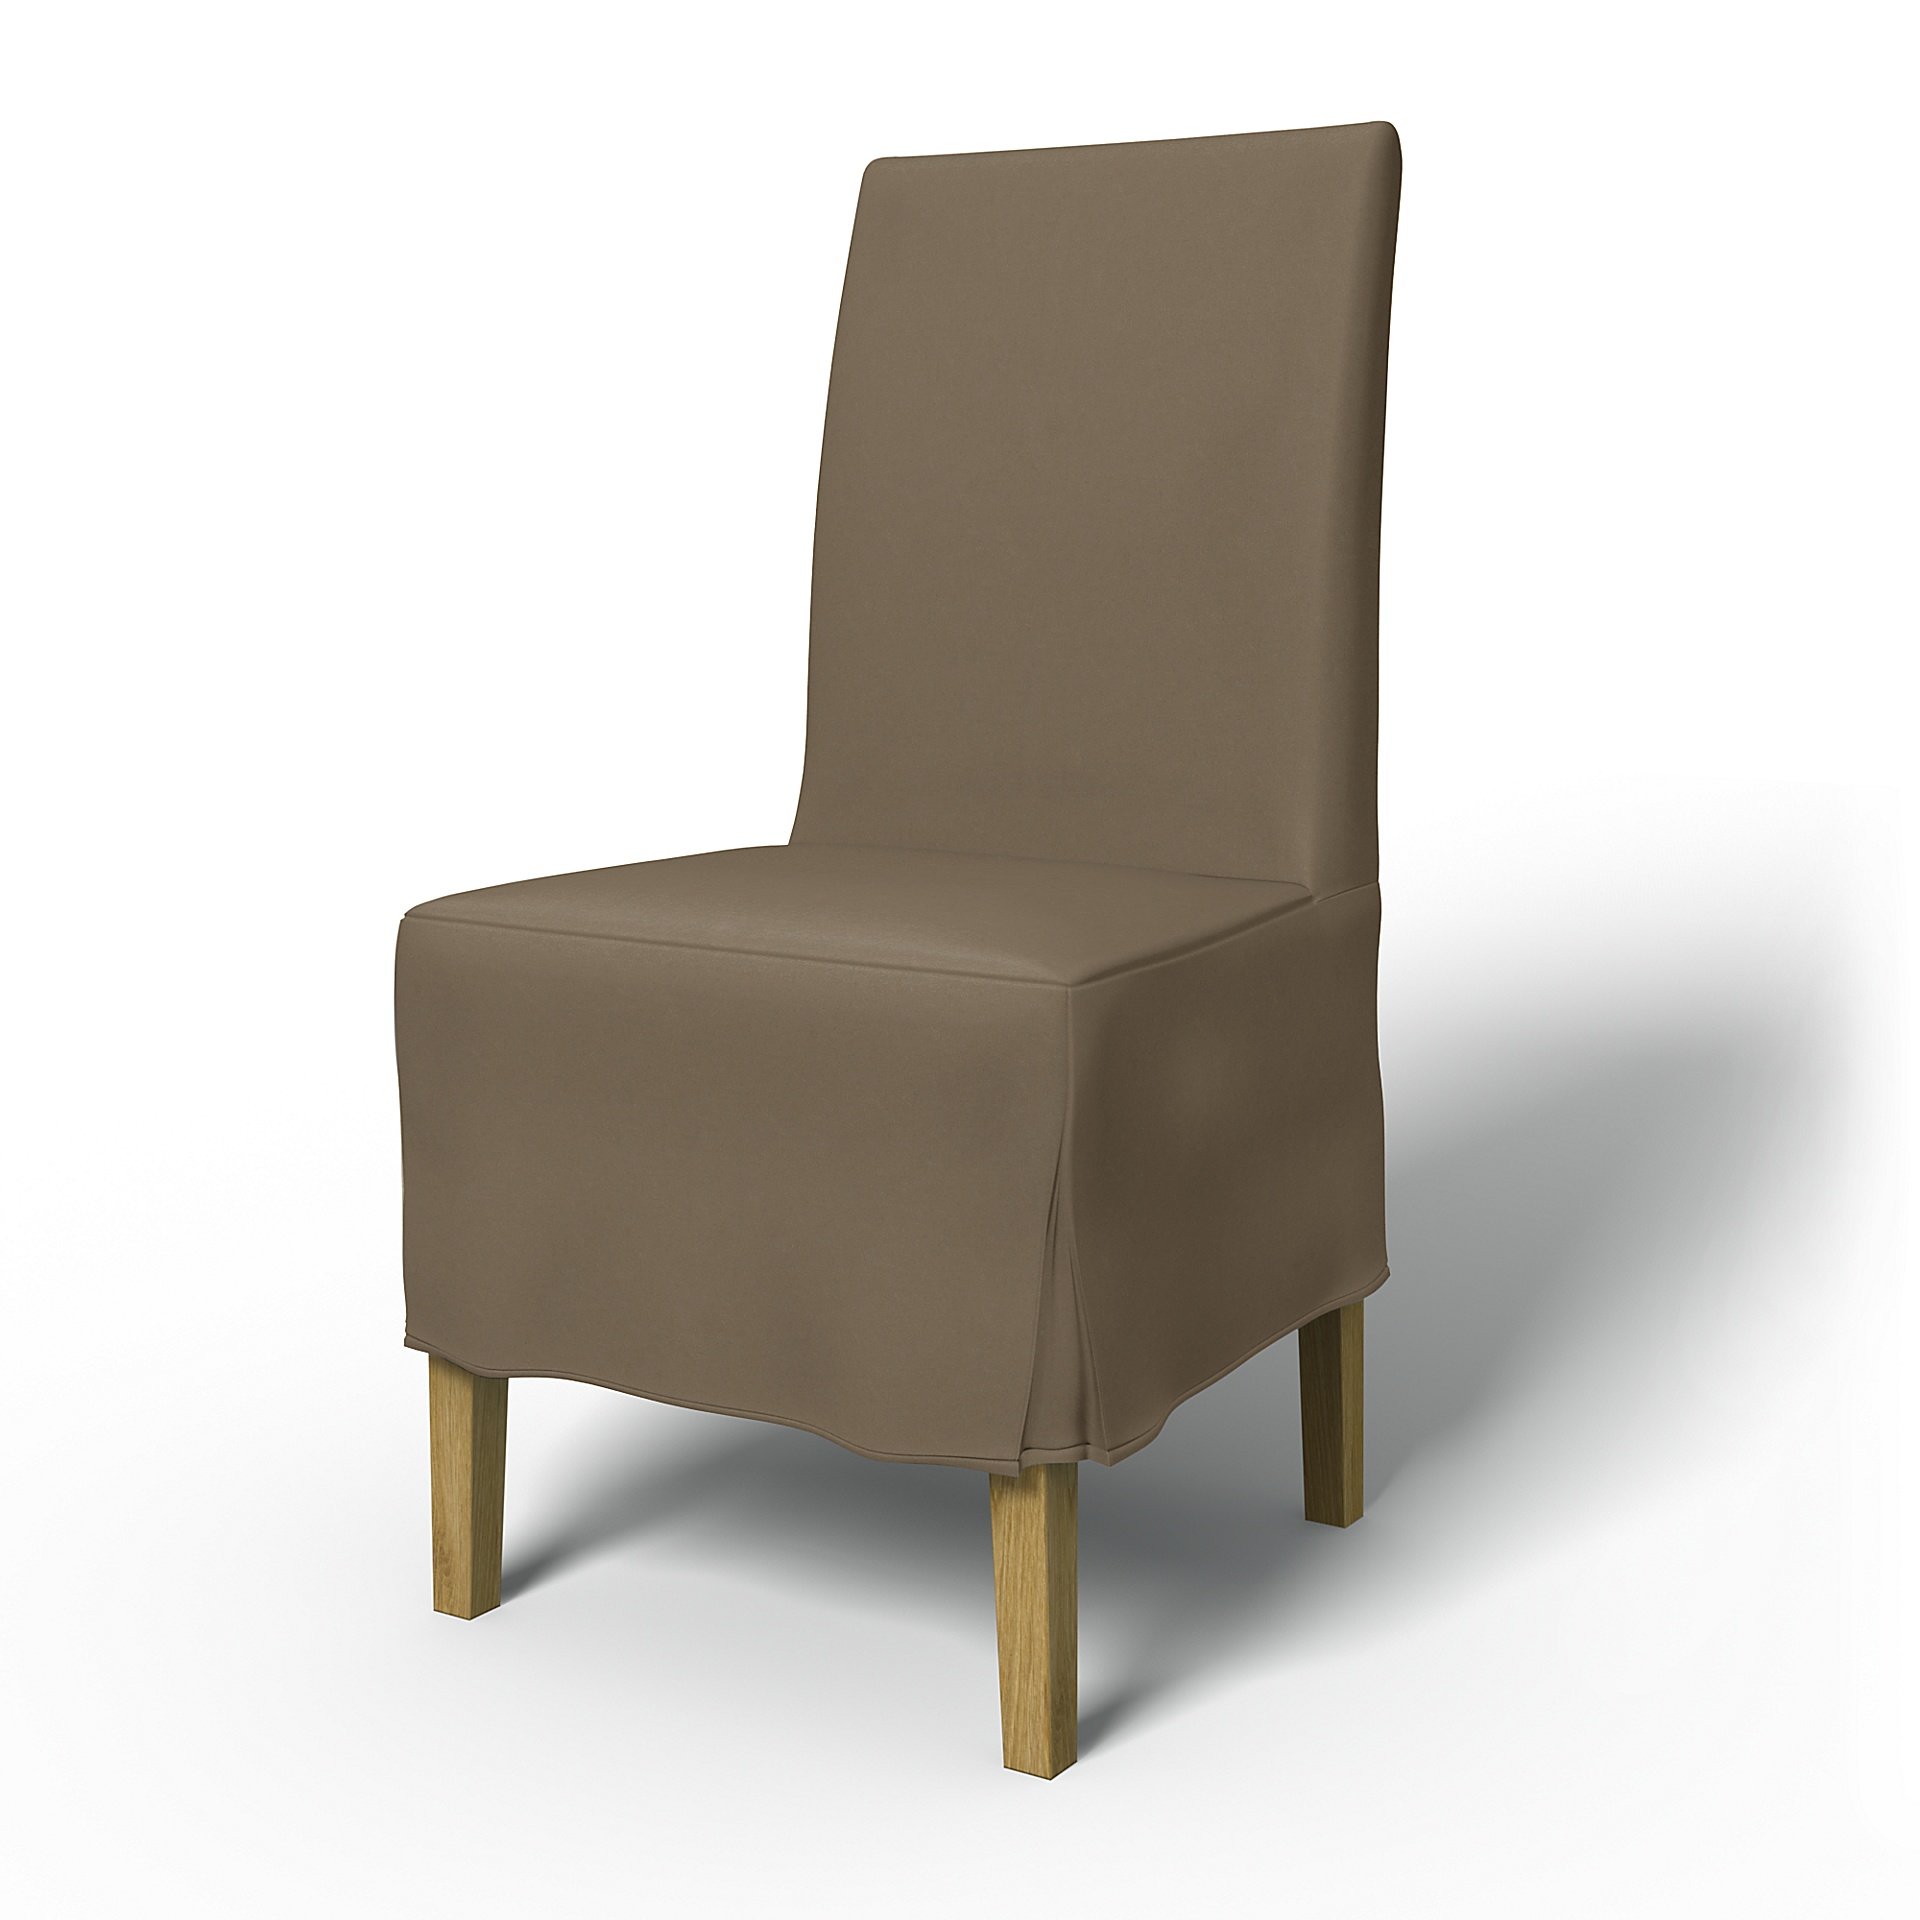 IKEA - Henriksdal Dining Chair Cover Medium skirt with Box Pleat (Standard model), Taupe, Velvet - B